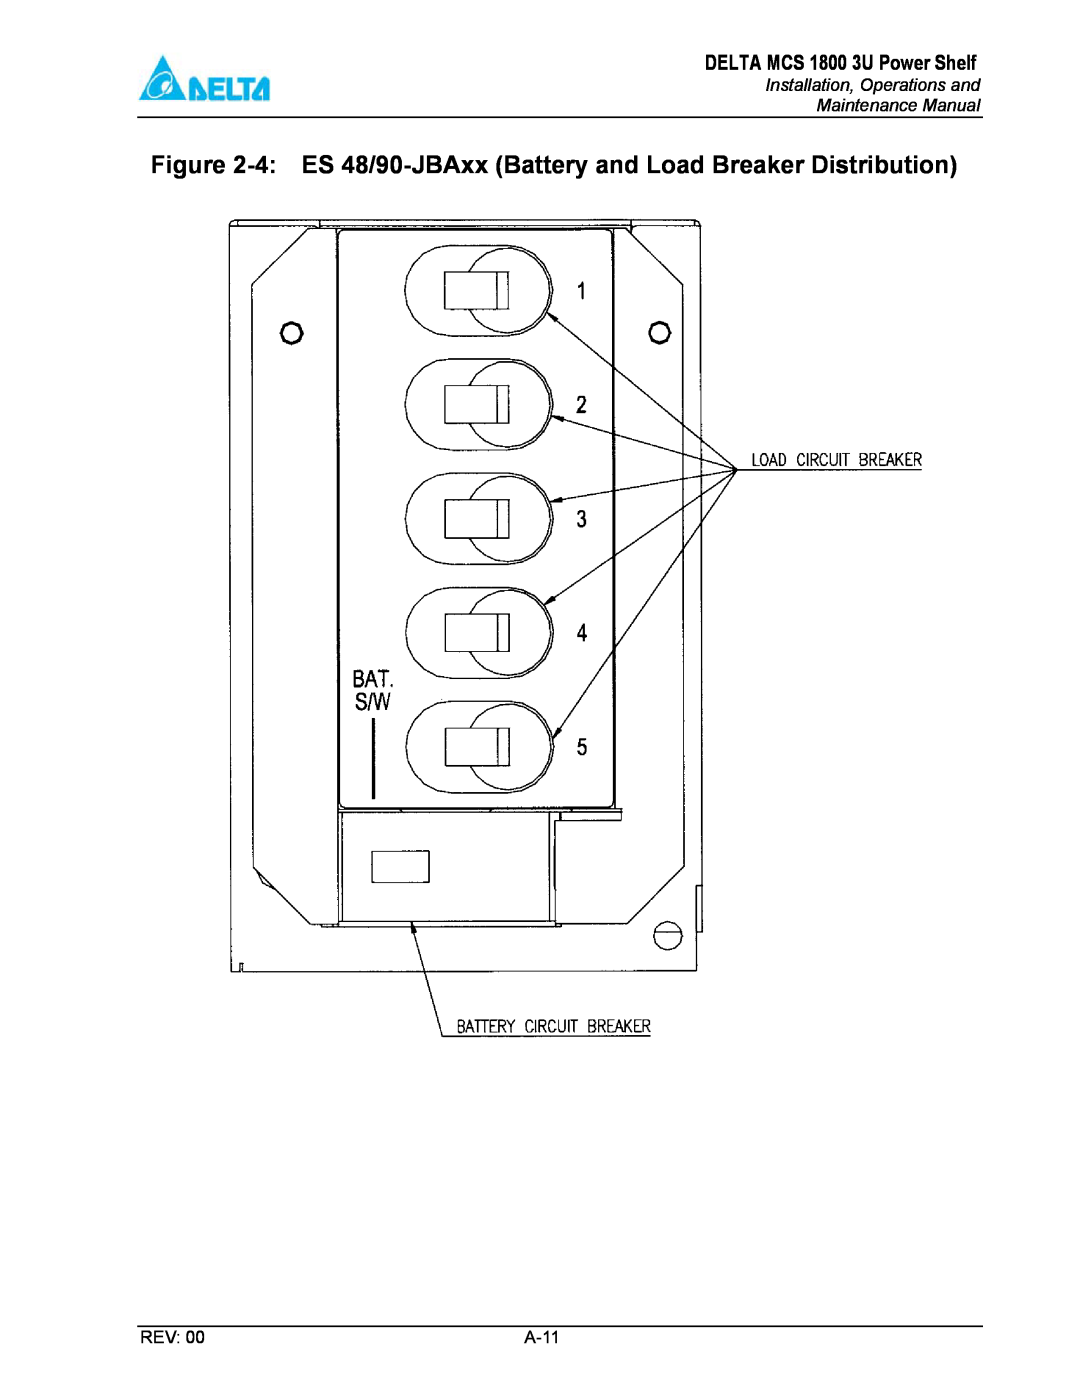 Delta MCS-1800 manual 4 ES 48/90-JBAxx Battery and Load Breaker Distribution, DELTA MCS 1800 3U Power Shelf, A-11 